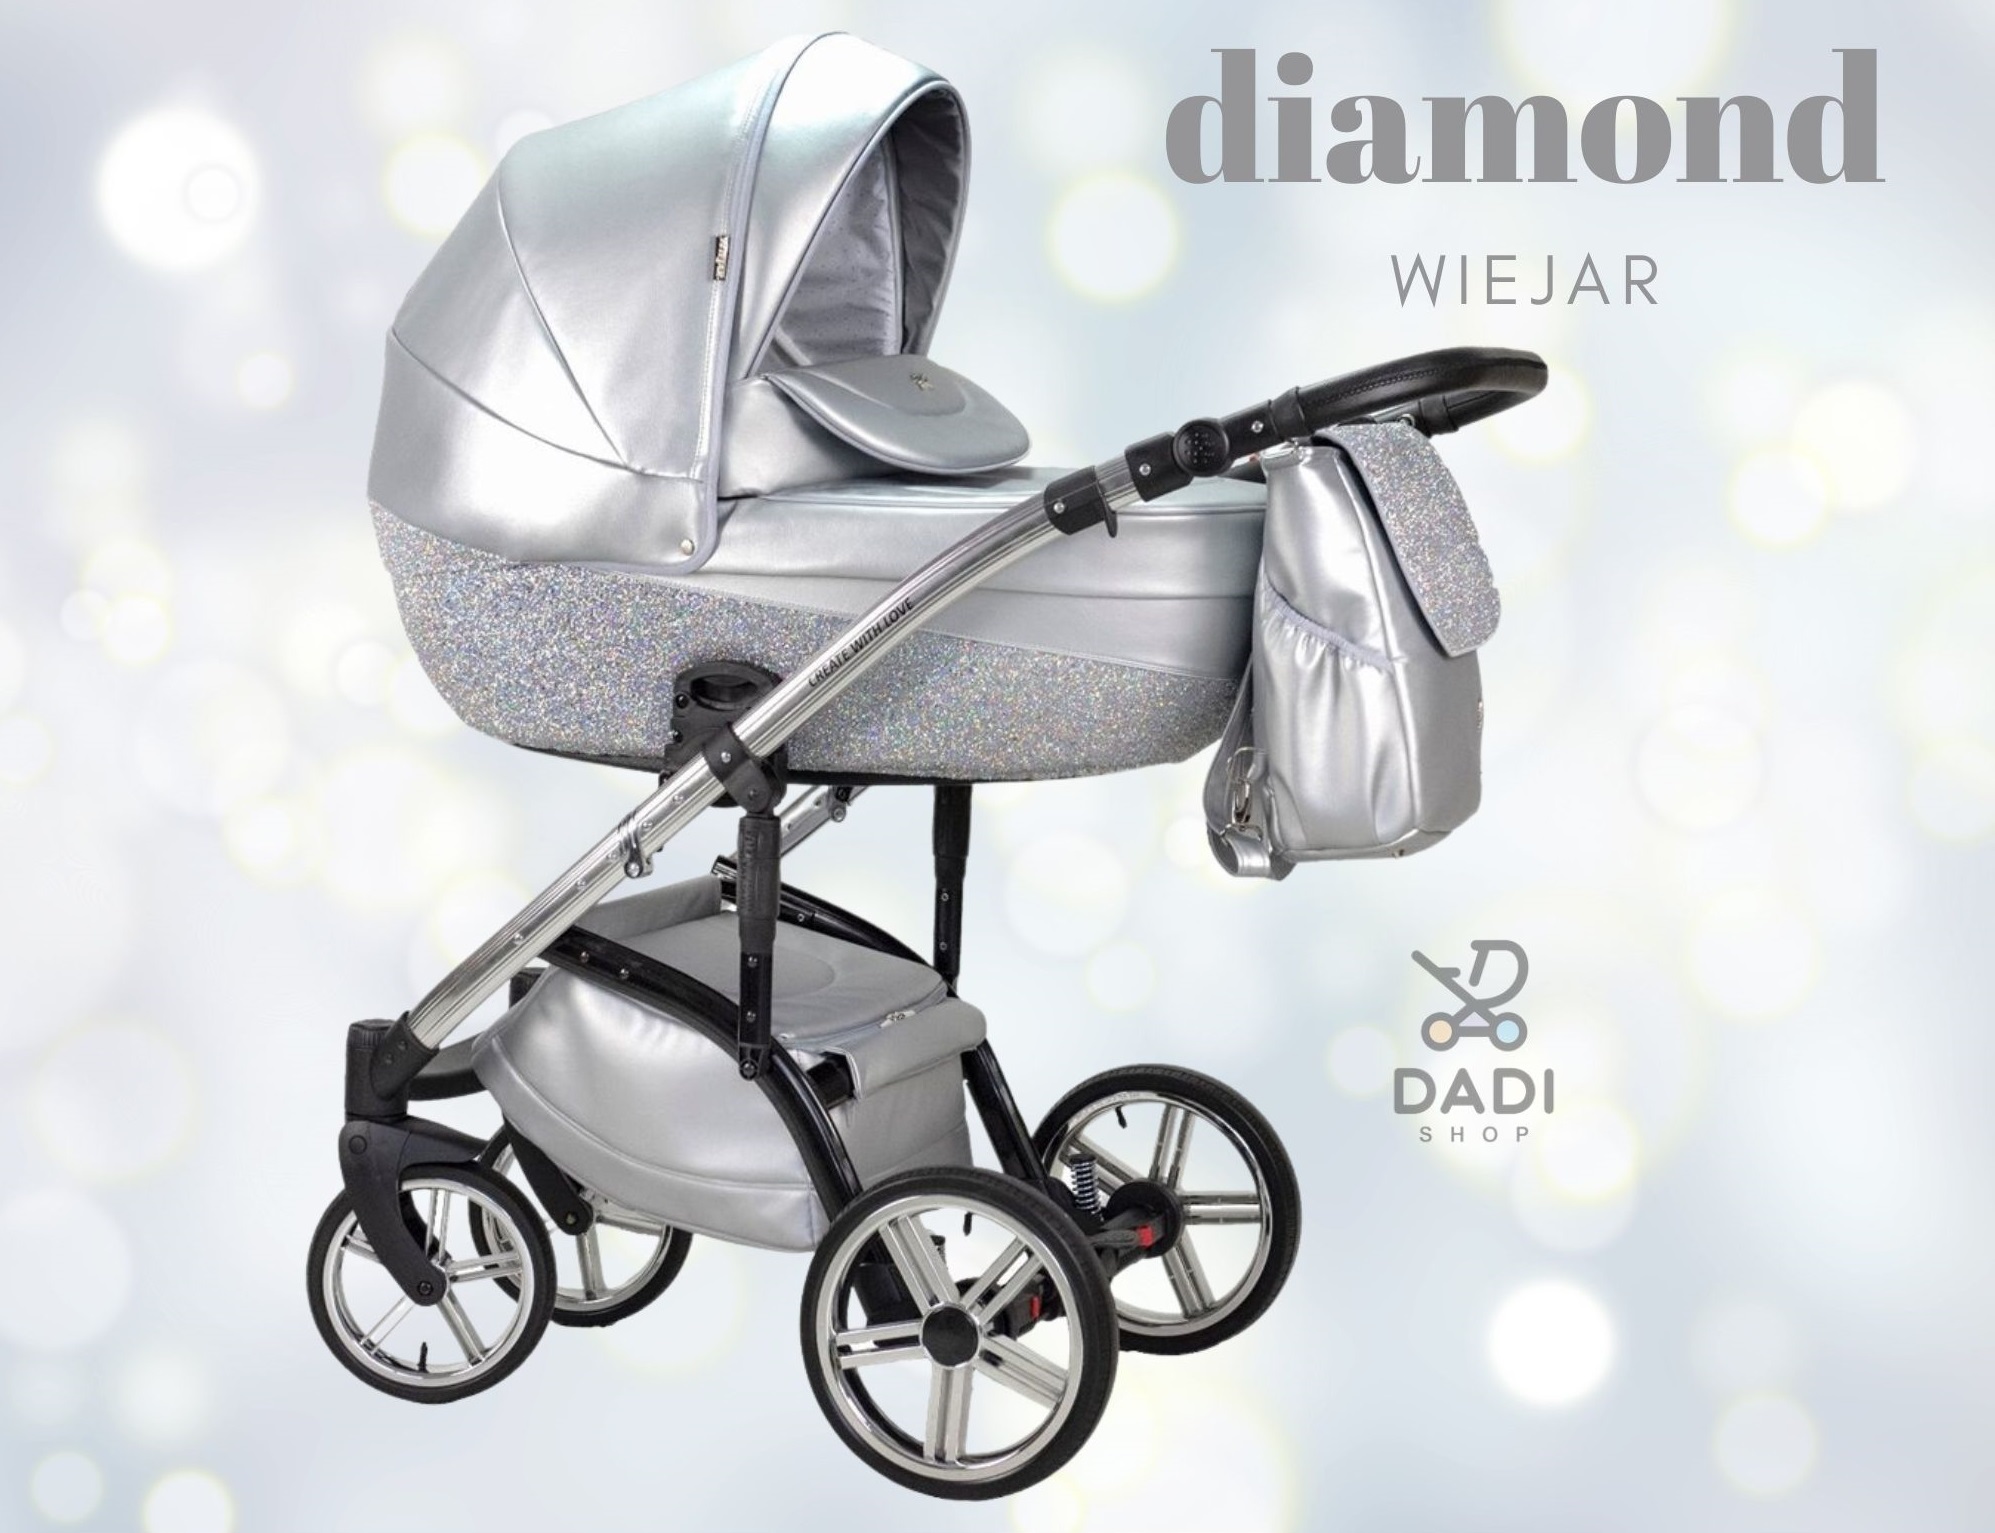 glitter stroller baby pram luxury jaki wozek wybrac najlepszy wozek dla dziewczynki chlopca diamond wiejar